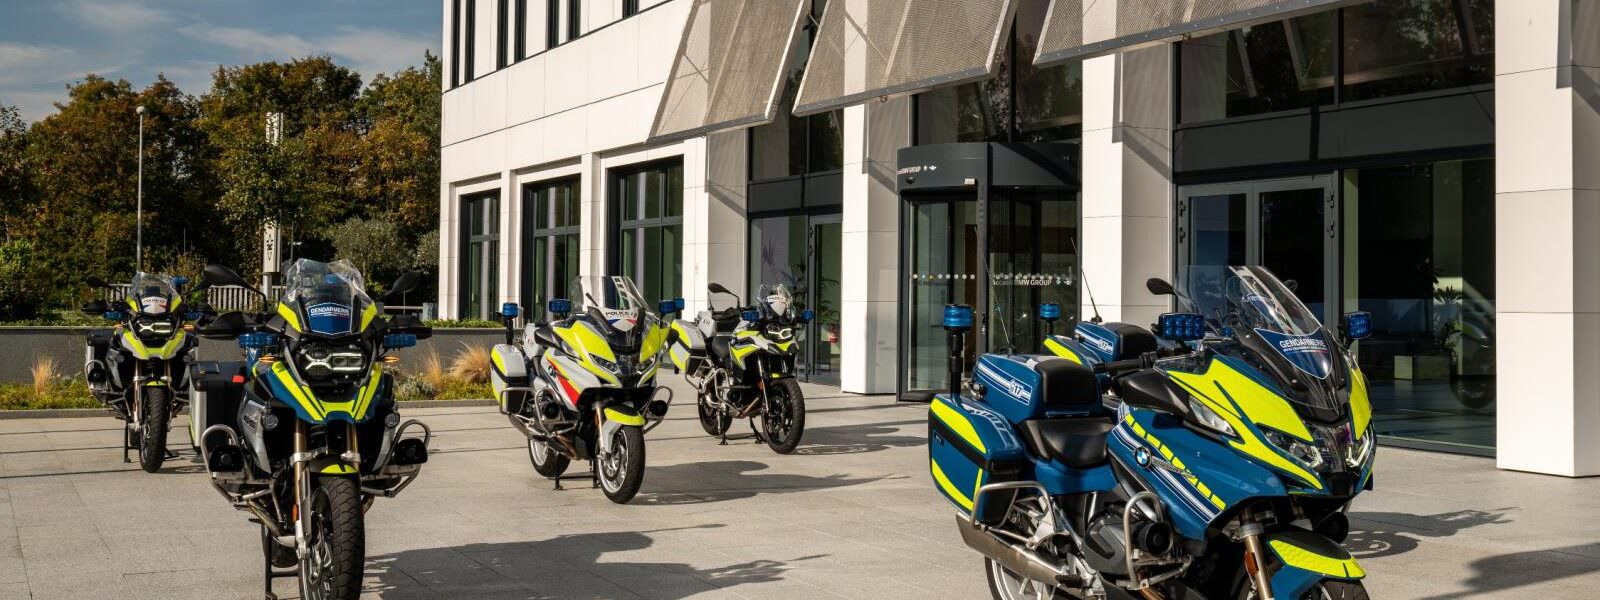 Moto police 2021 11 3